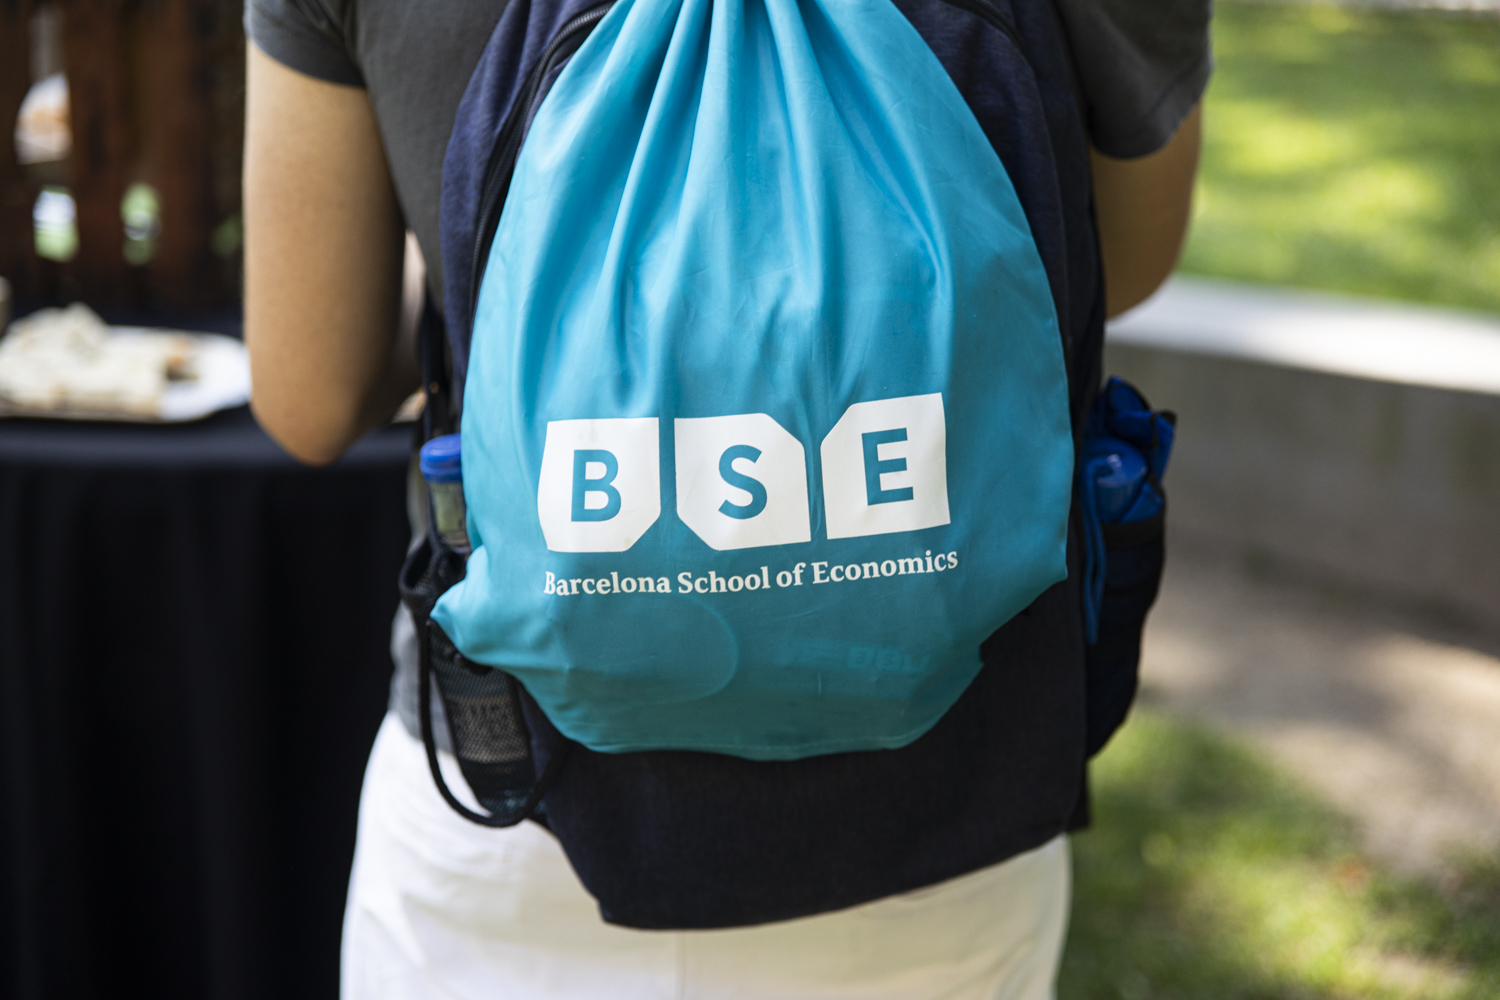 BSE branded bag at Summer School 